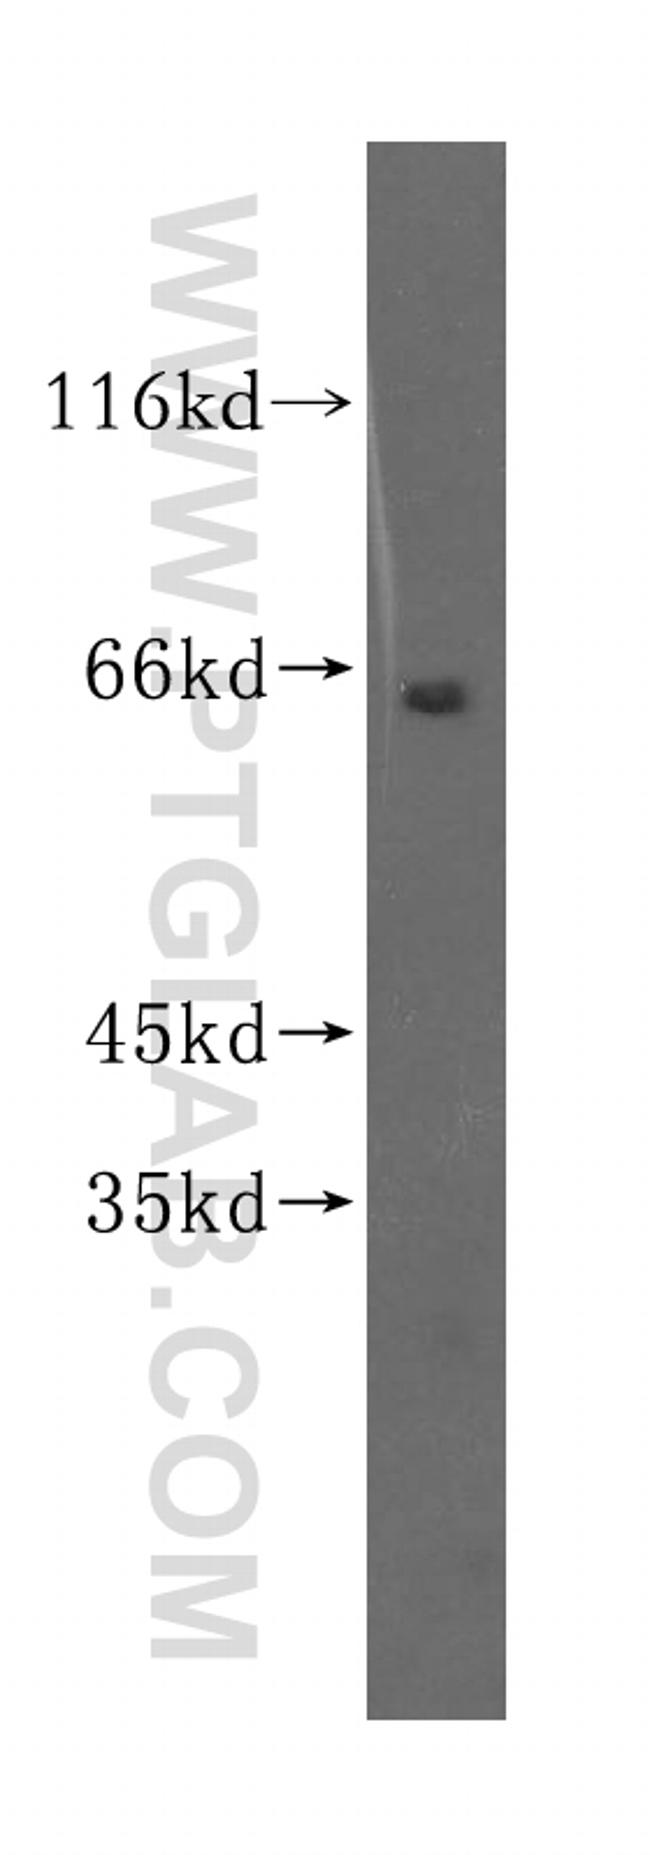 SGOL1 Antibody in Western Blot (WB)